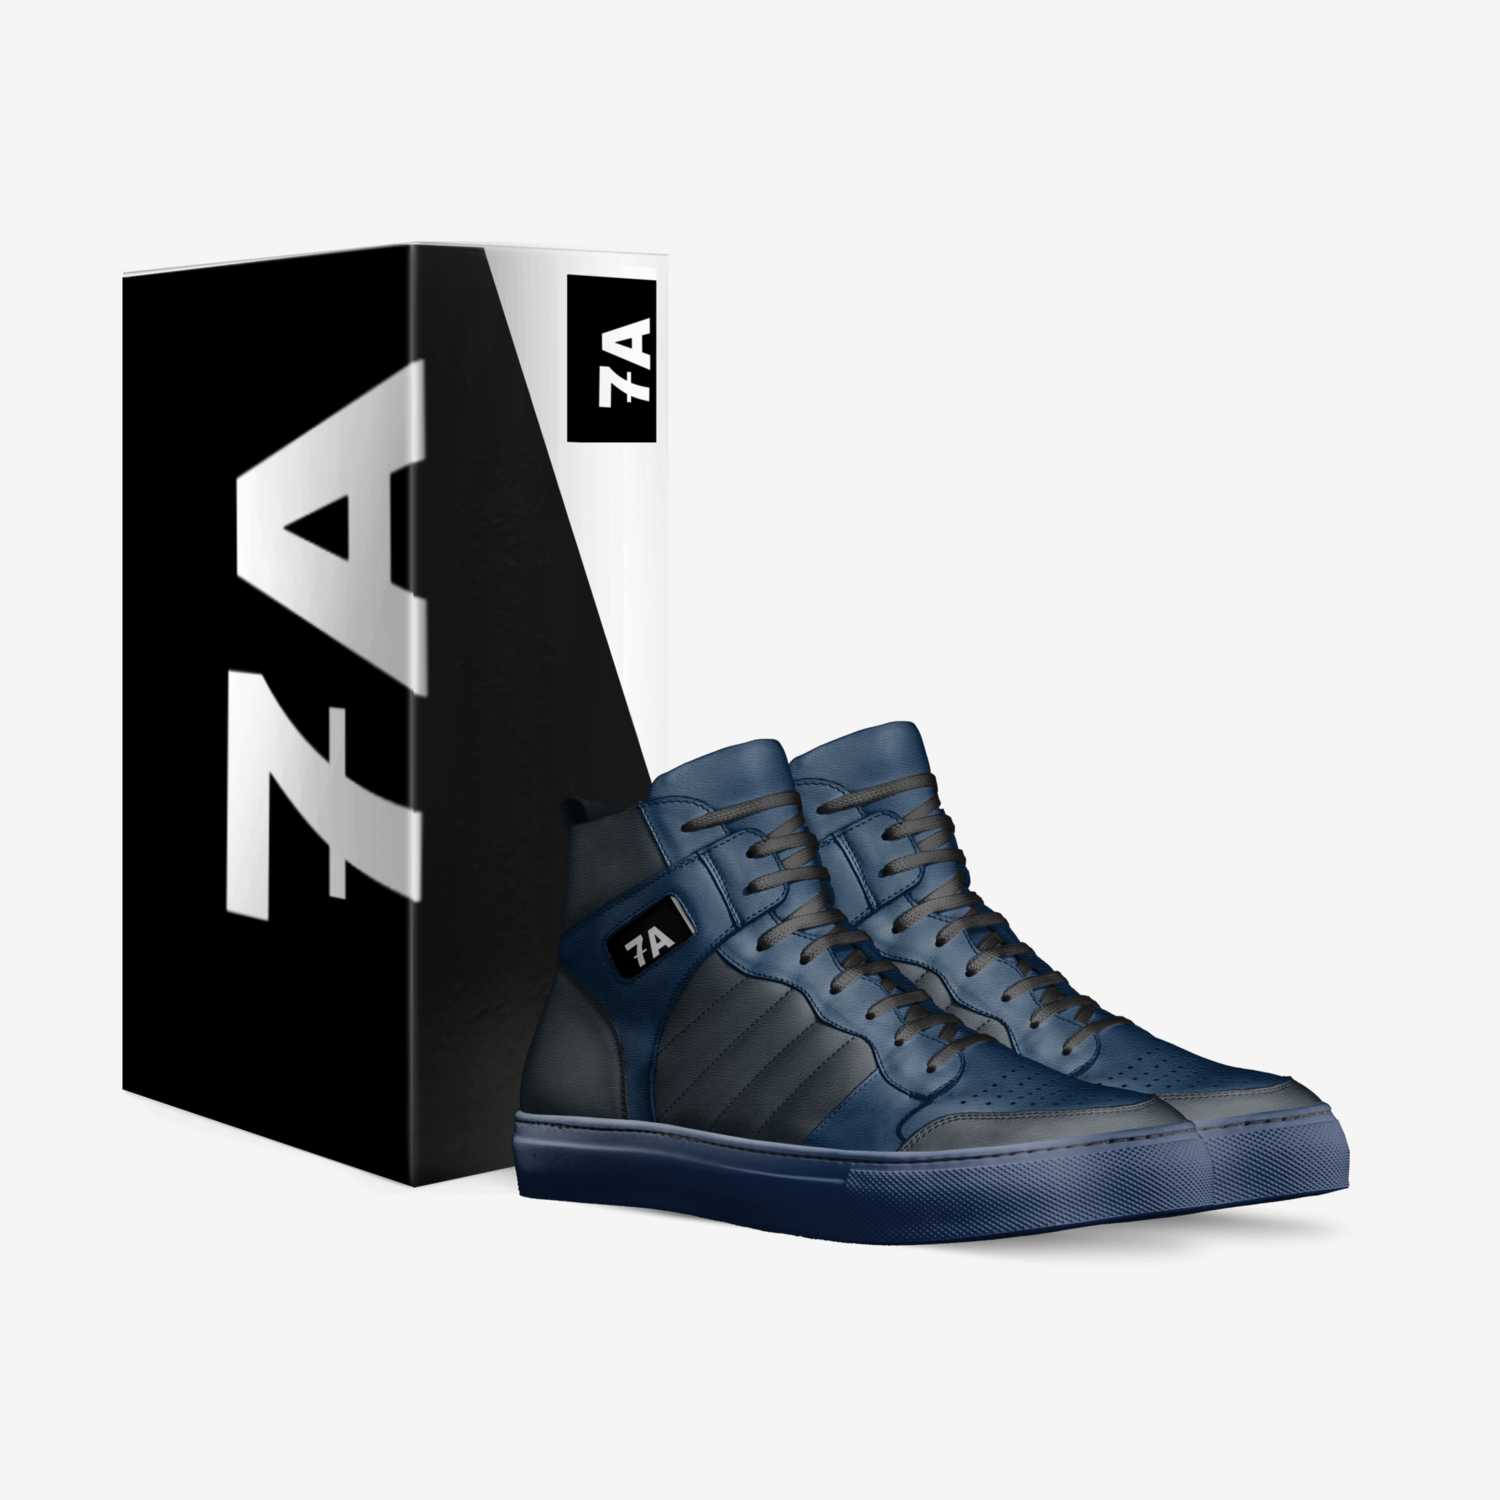 F7 custom made in Italy shoes by Fahad Abdulazizi | Box view